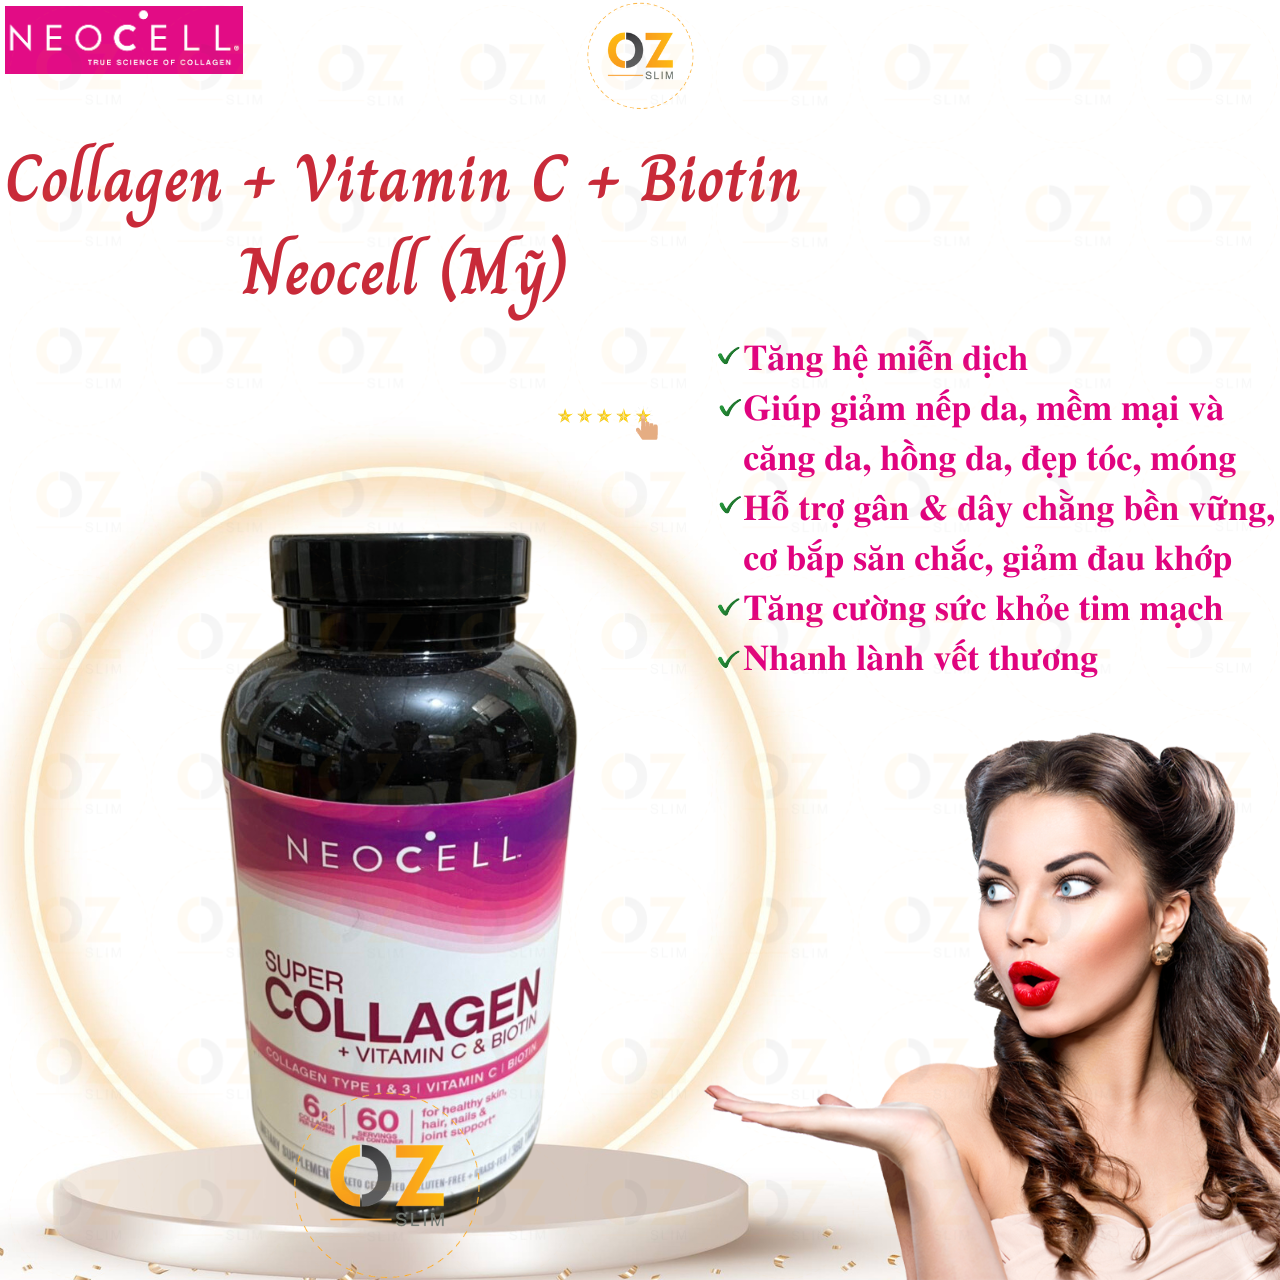 Collagen Neocell Types 1 & 3 Mỹ Hỗ trợ cang da, giảm nhăn da, giúp da, tóc, móng tay và khớp khỏe mạnh từ bên trong ra ngoài - OZ Slim Store